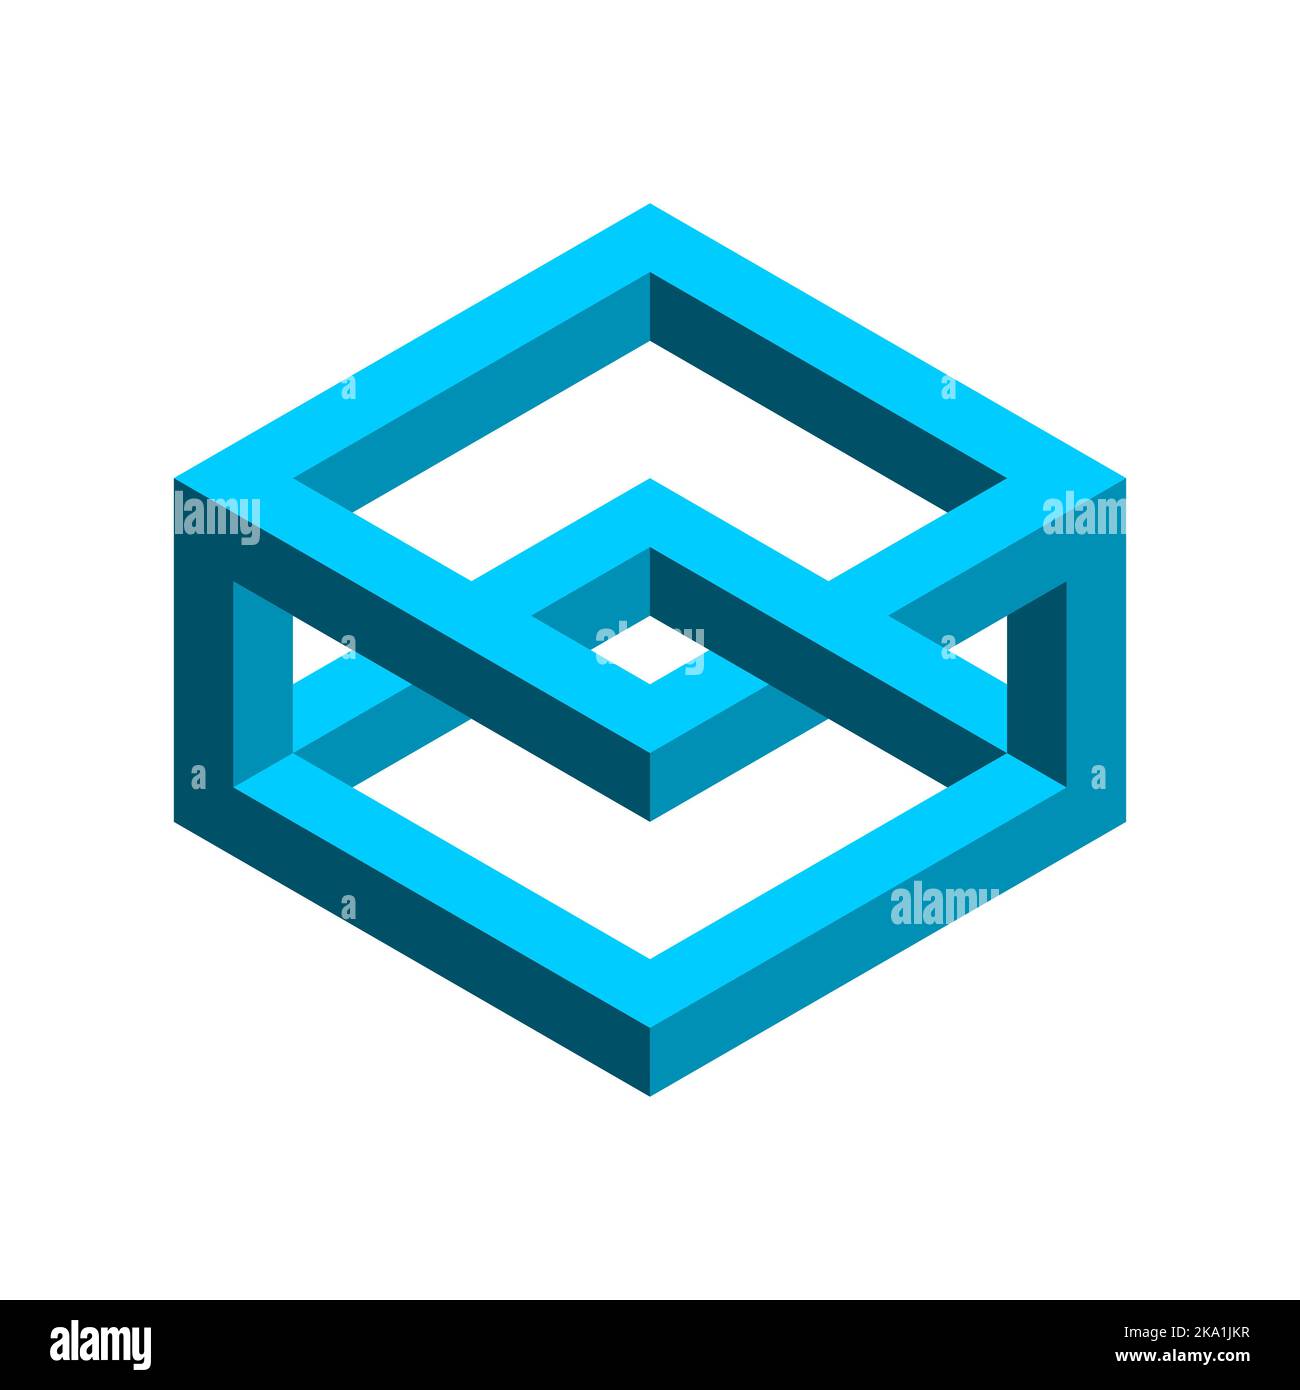 Blaues unmögliches Rechteck. Geometrisches Objekt Esher penrose. 3D Isometrische Form mit überlappenden Seiten. Optische Täuschung, visuelle Wahrnehmung, op Art. Stock Vektor